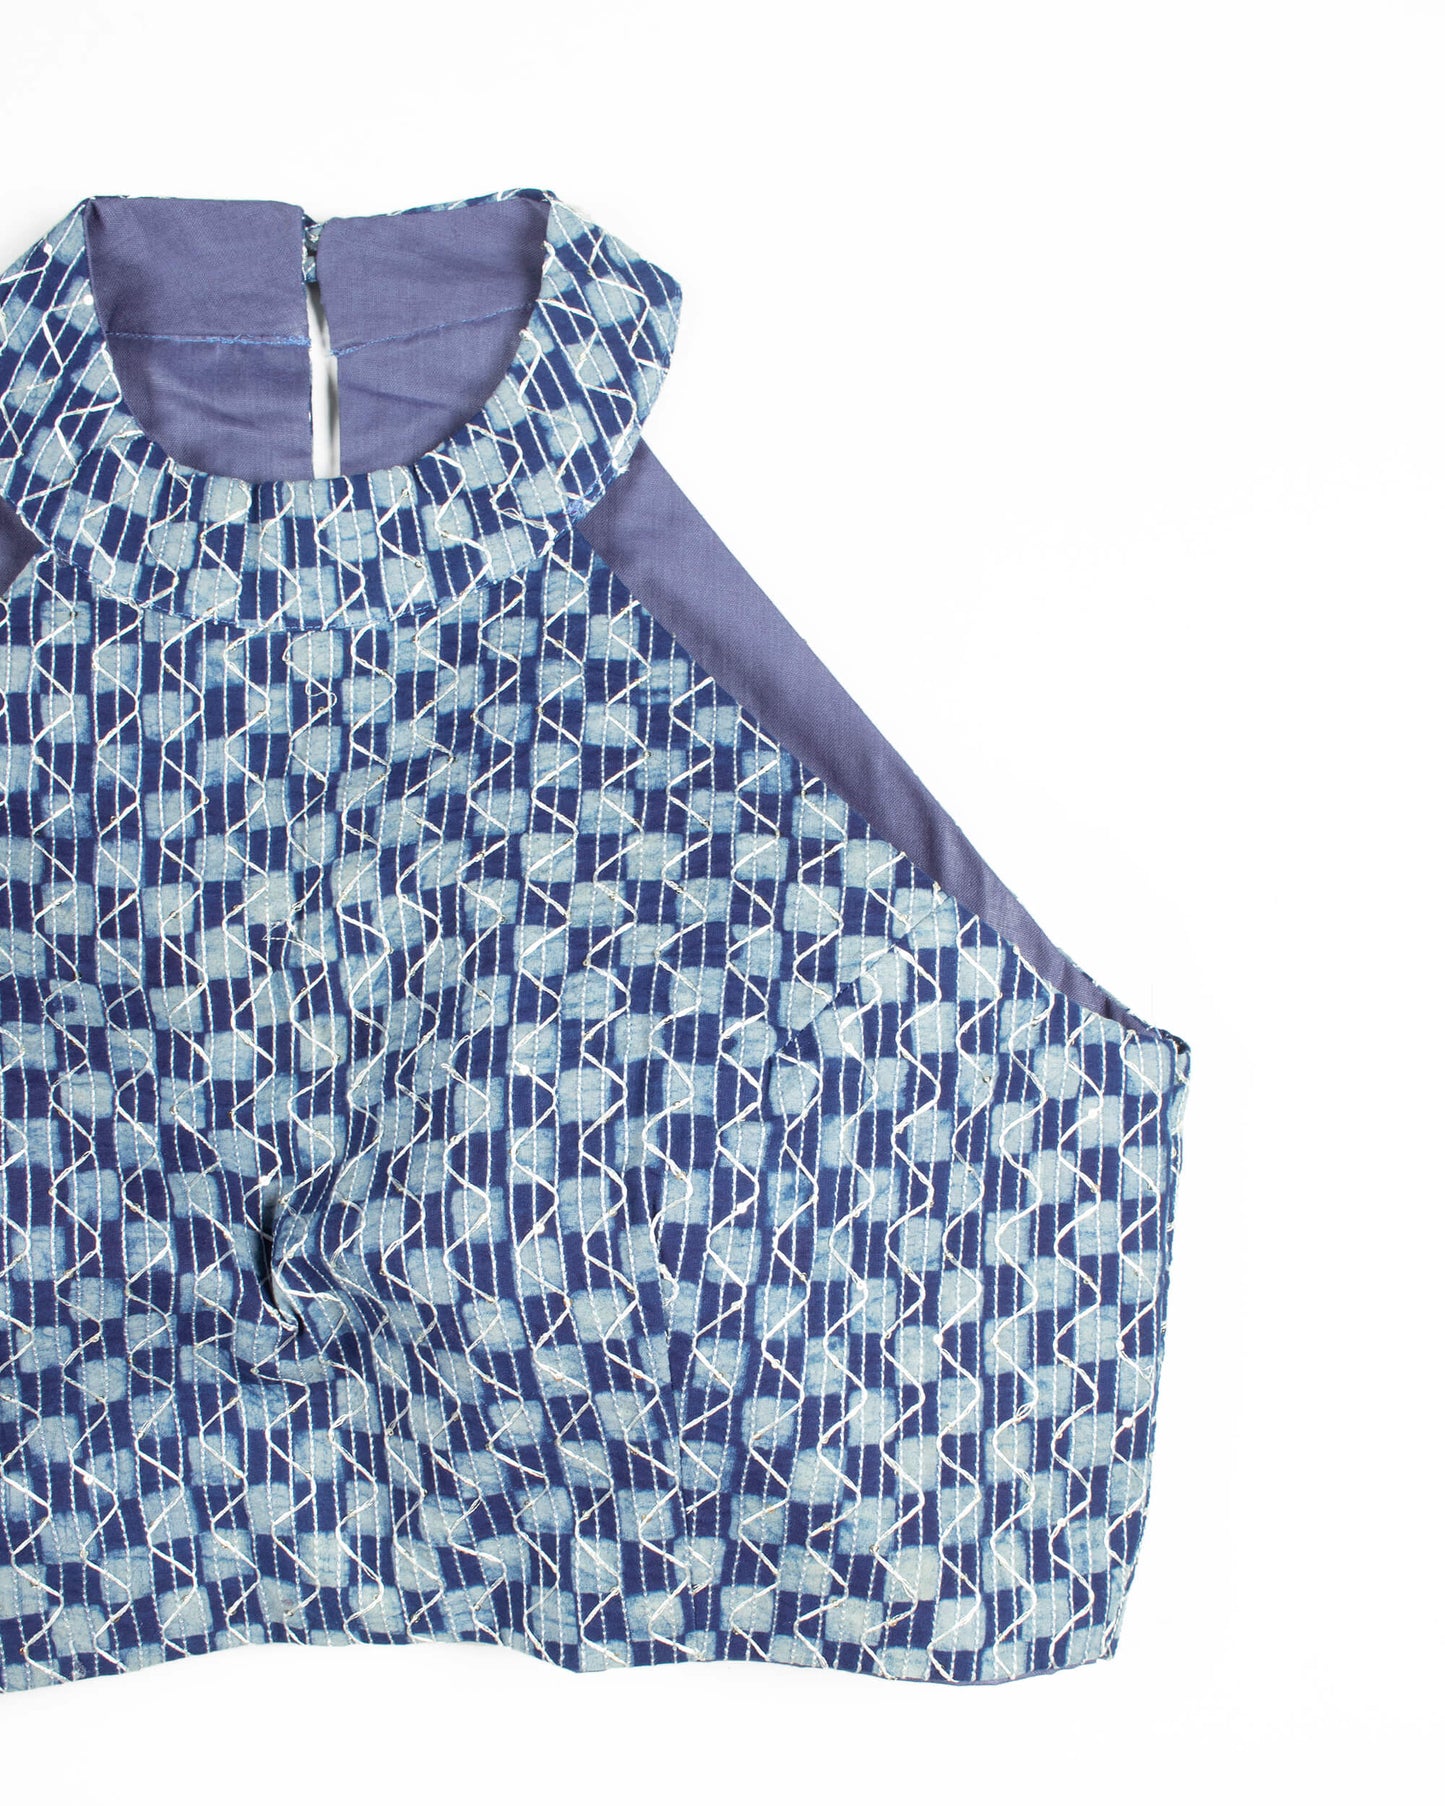 Indigo Sequins Embroidery Cotton Halter Neck Blouse